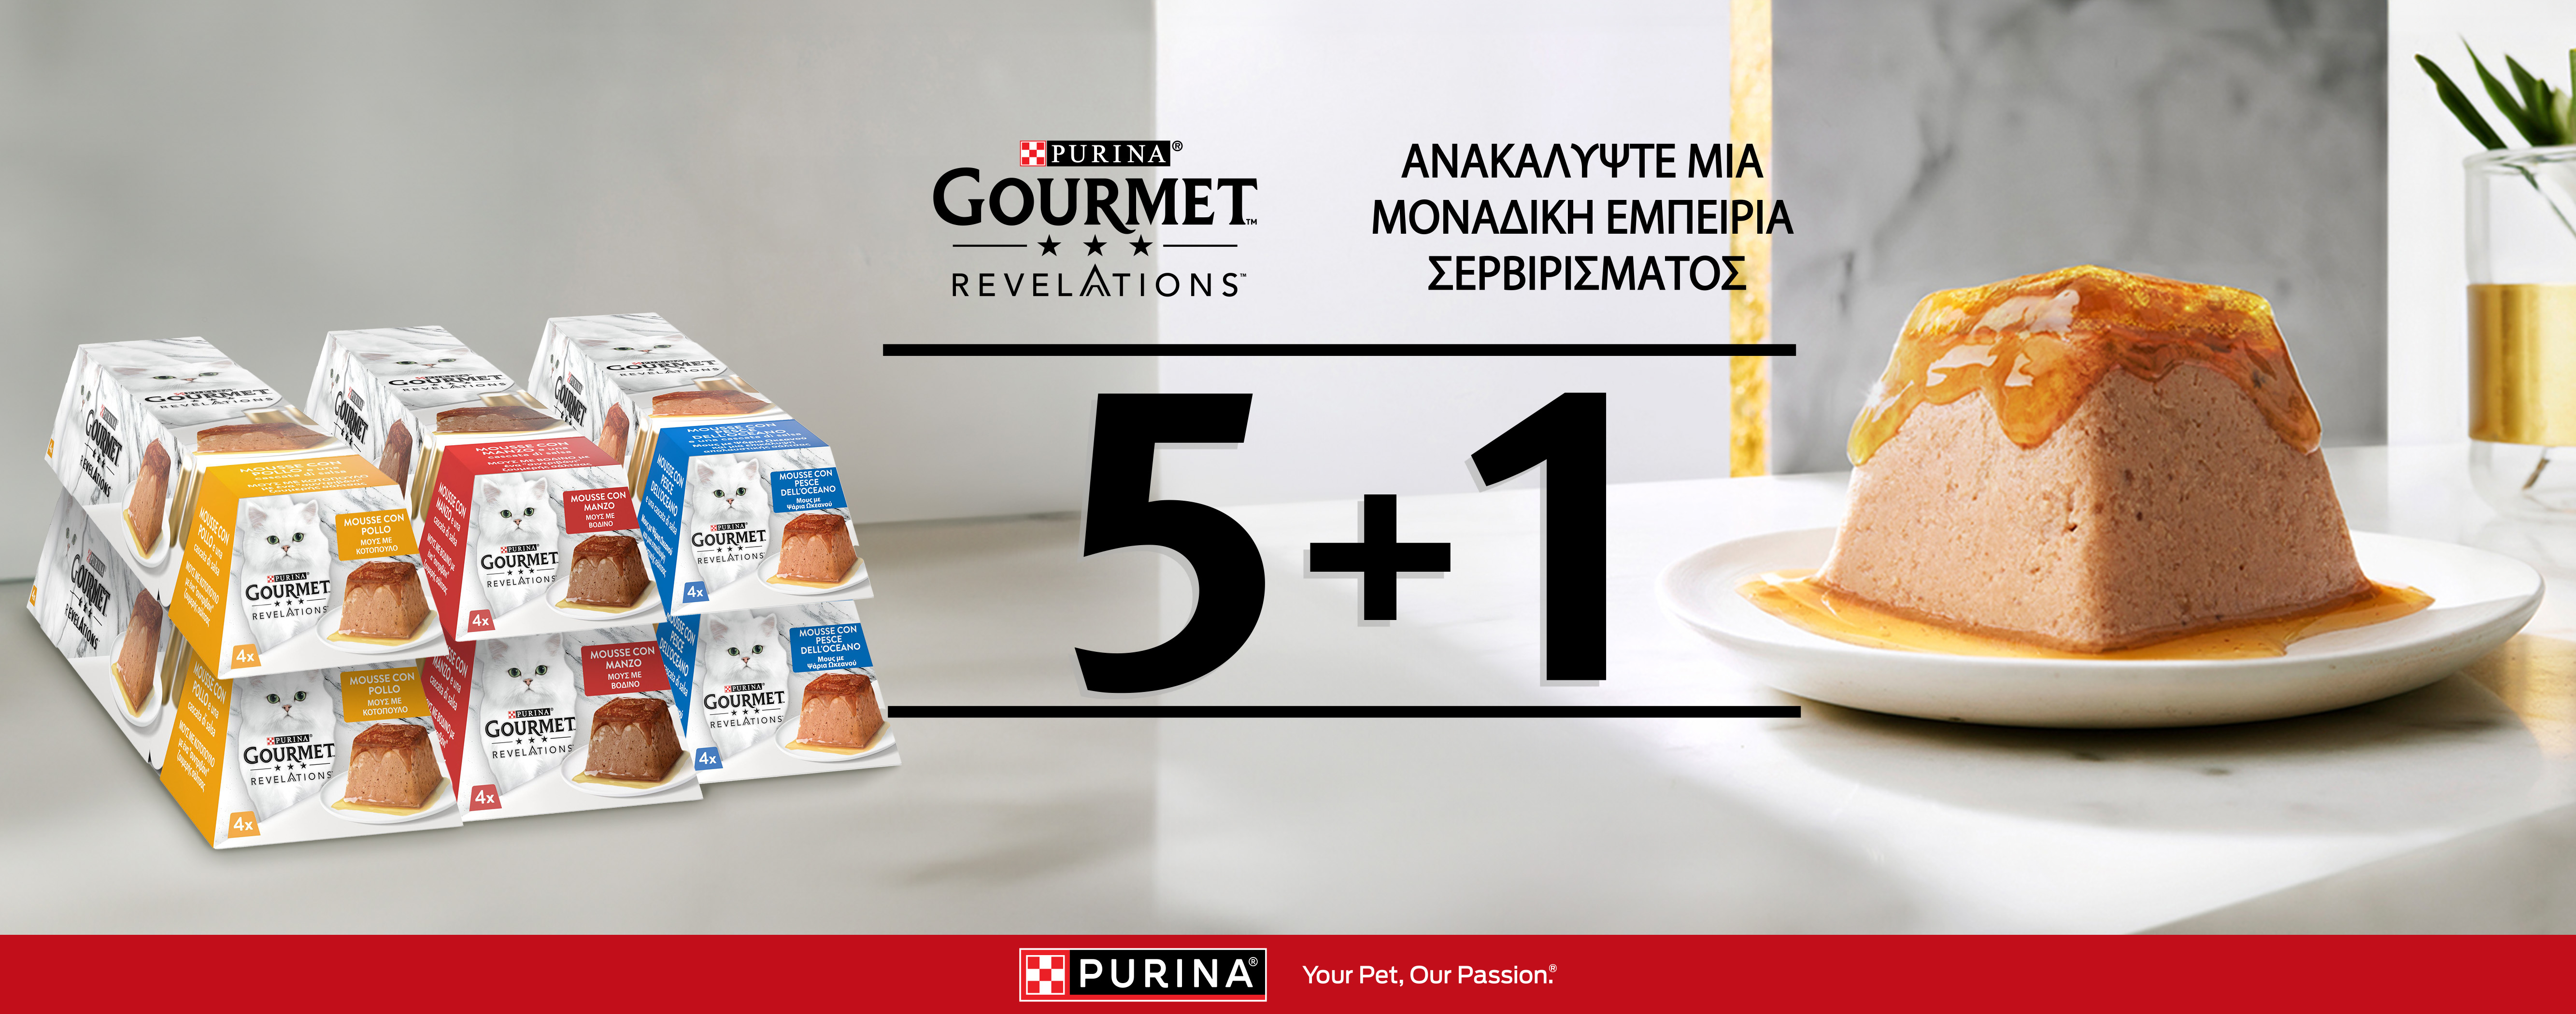 5+1 ΔΩΡΟ Purina Gourmet Revelations